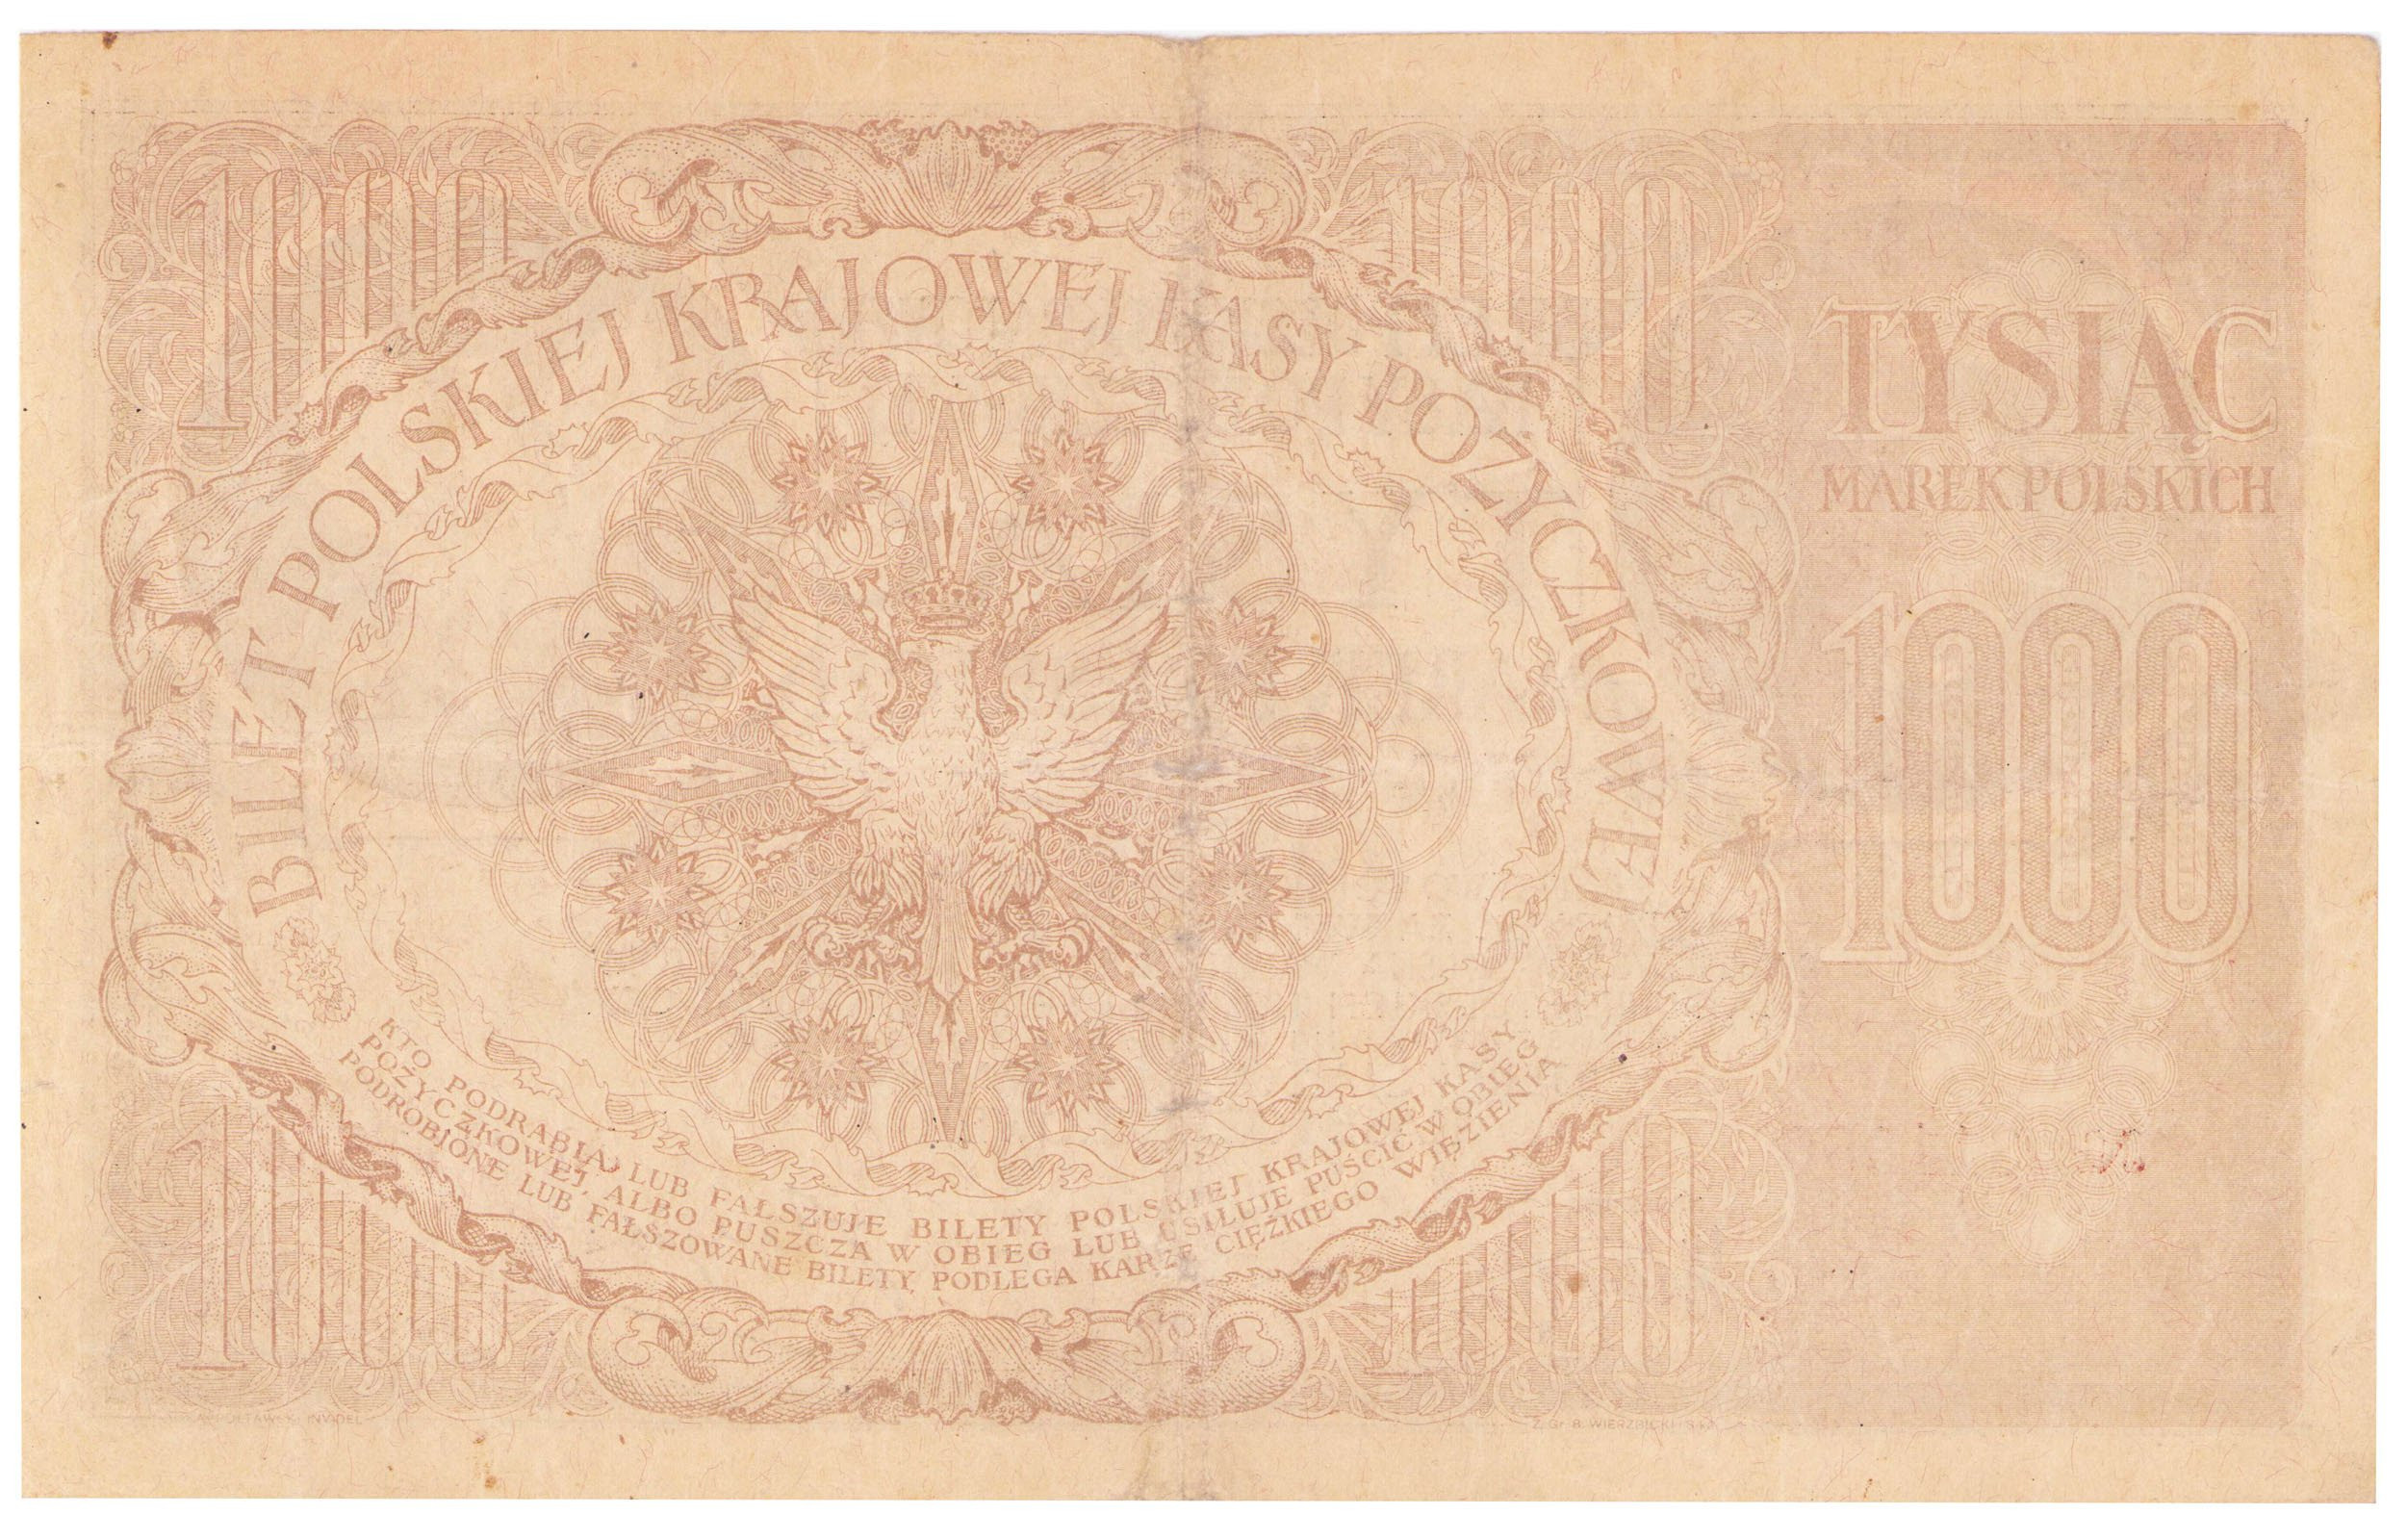 1.000 marek polskich 1919 – RZADOŚĆ R6